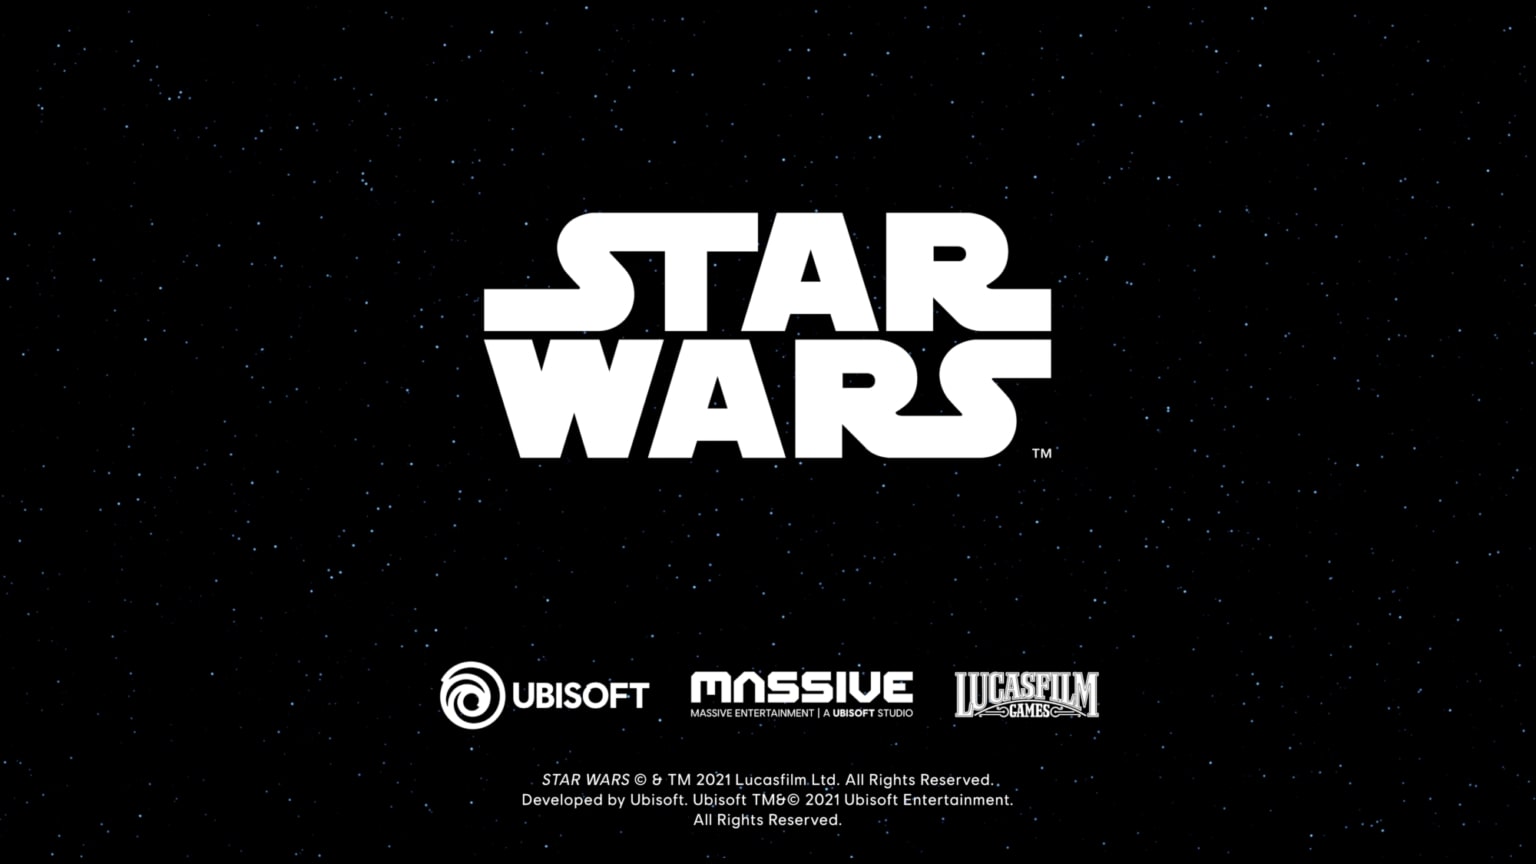 Star Wars Disney Ubisoft ile Yeni Bir Anlaşma Yaptı